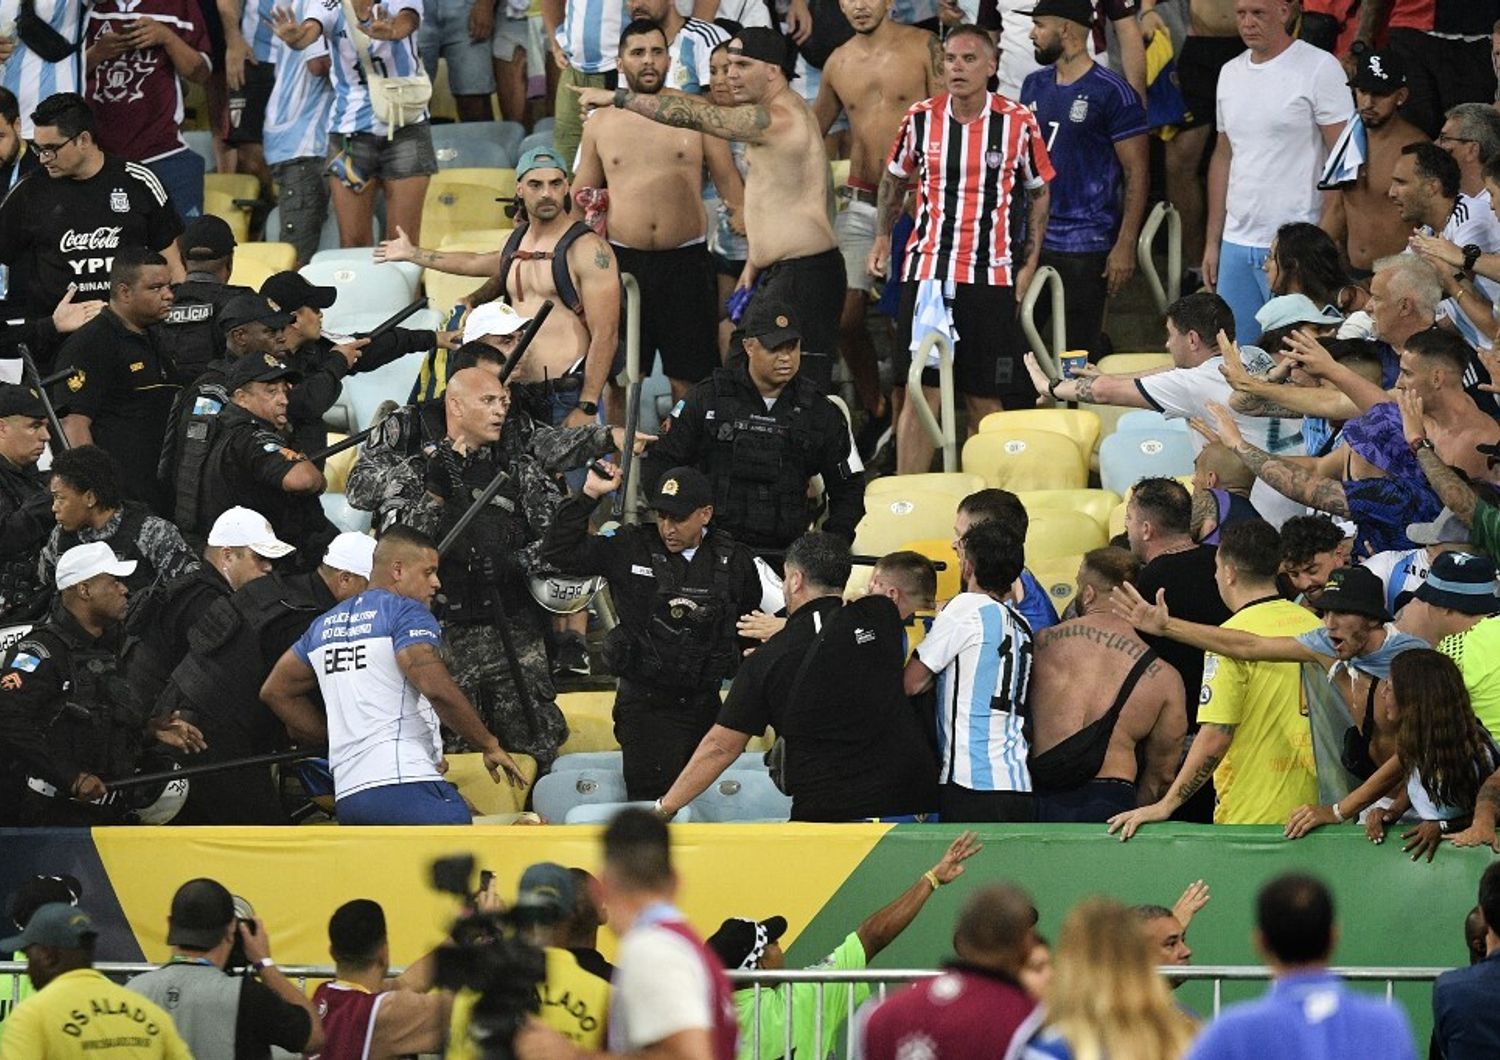 L'intervento della polizia allo stadio Maracan&agrave;